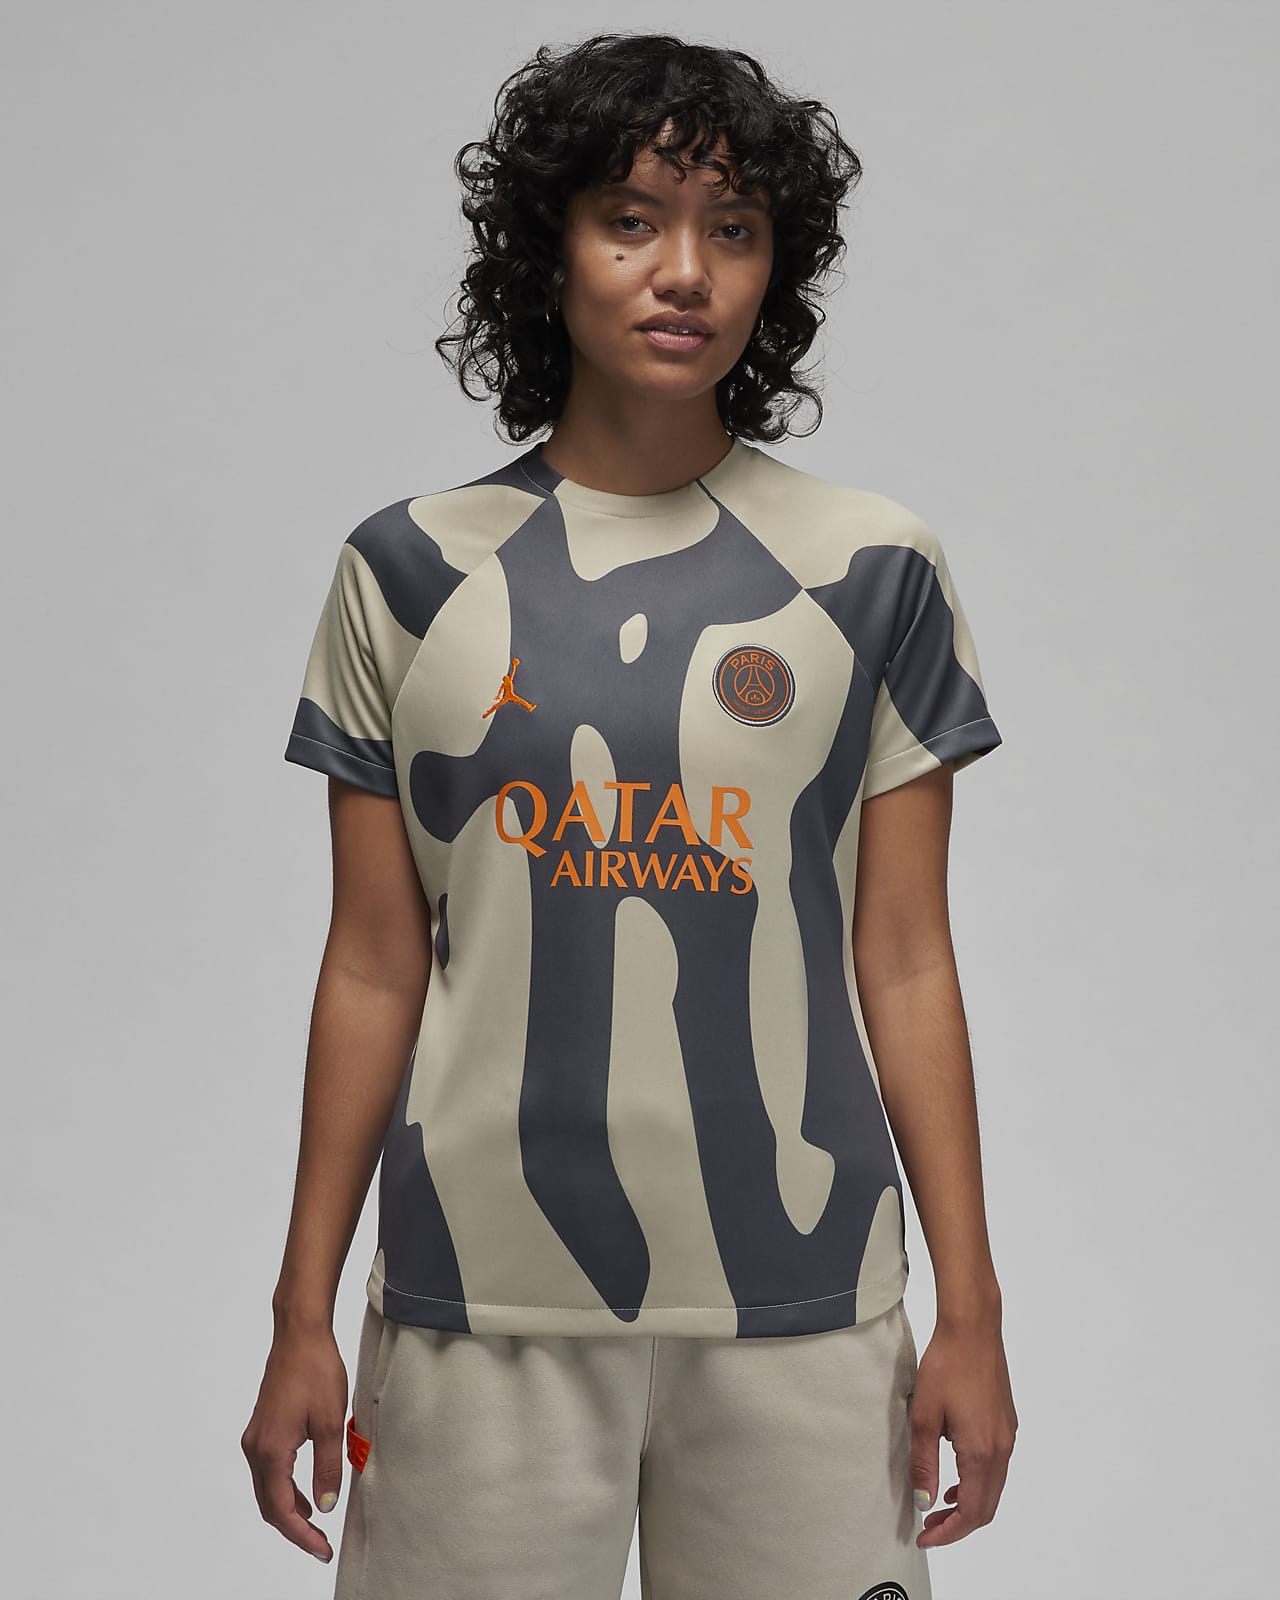 Γυναικεία ποδοσφαιρική μπλούζα προθέρμανσης Nike Dri-FIT εναλλακτικής εμφάνισης Παρί Σεν Ζερμέν Academy Pro